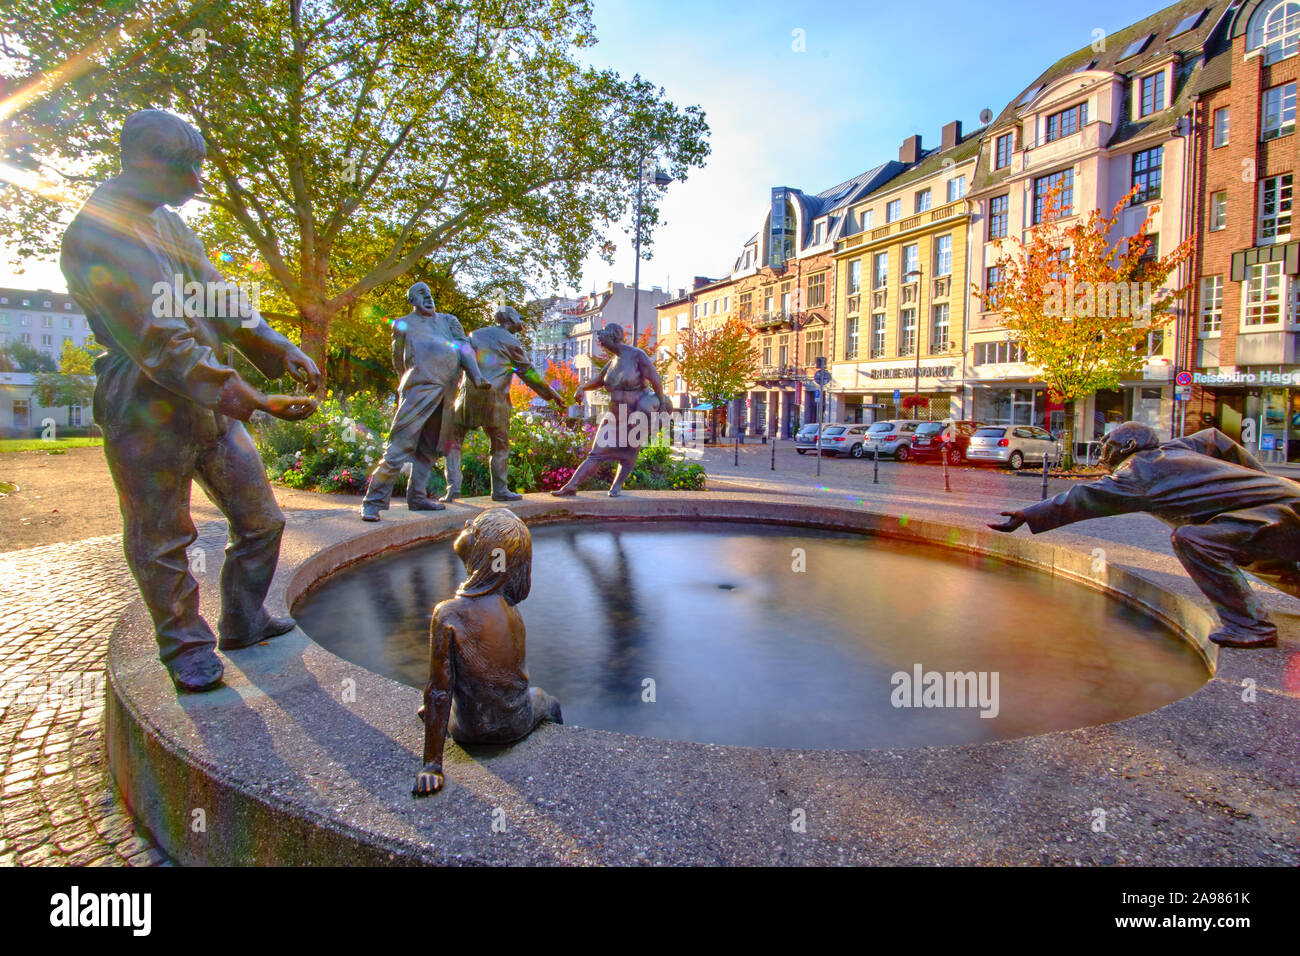 'Kreislauf des Geldes' Circulation of Money fountain in Aachen, Germany Stock Photo